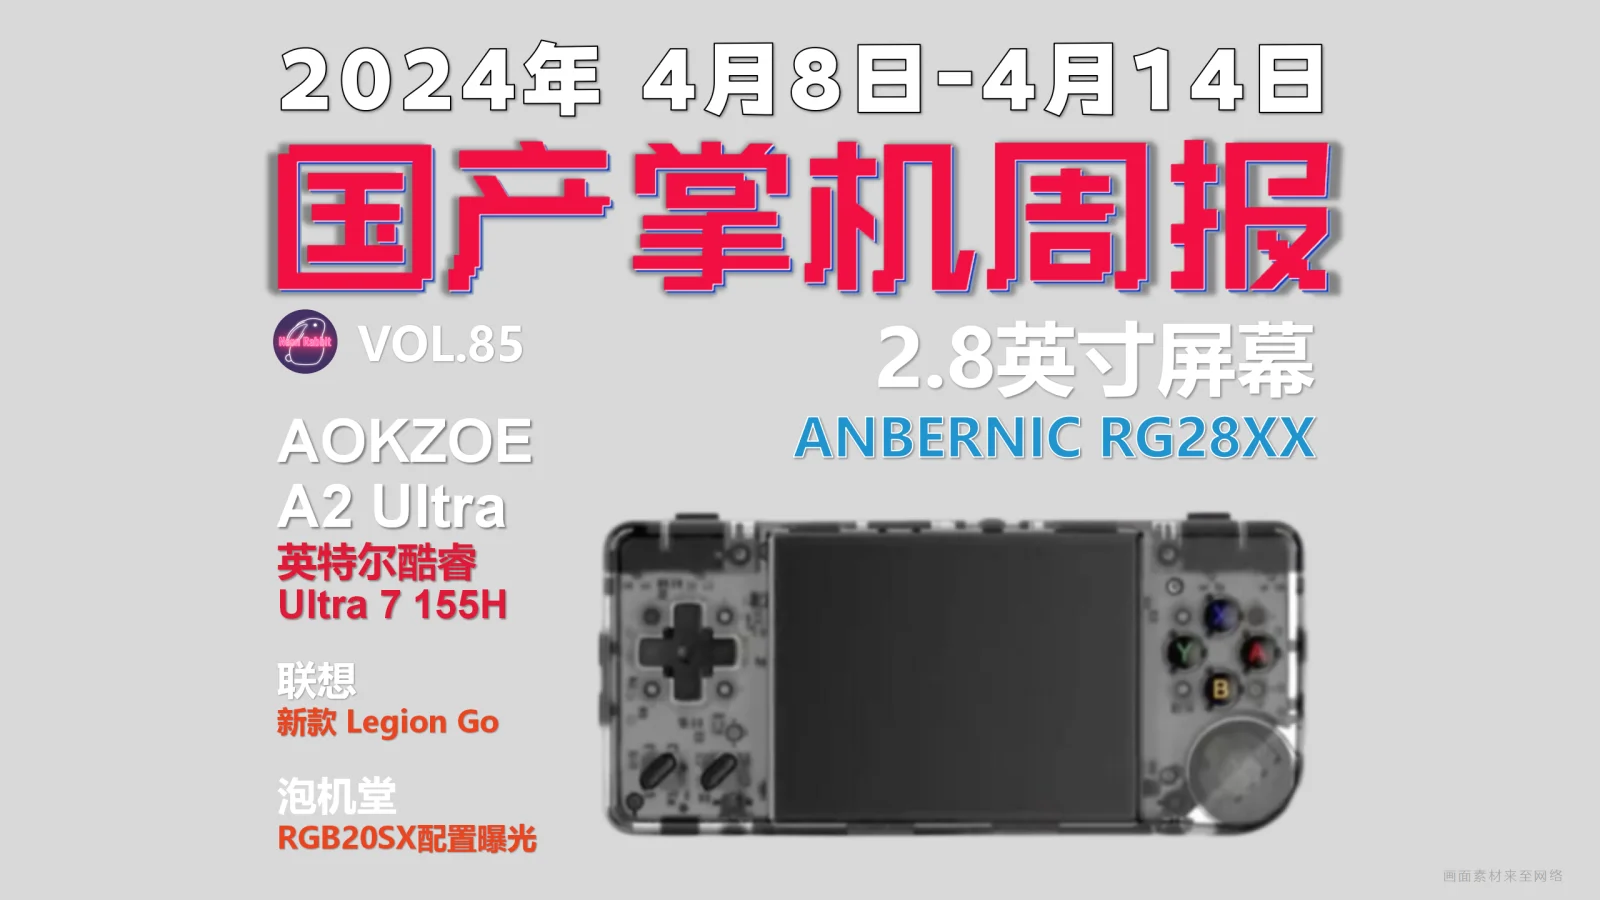 2.8英寸小型掌机，ANBERNIC RG28XX发布 - 国产游戏掌机周报 NO.85